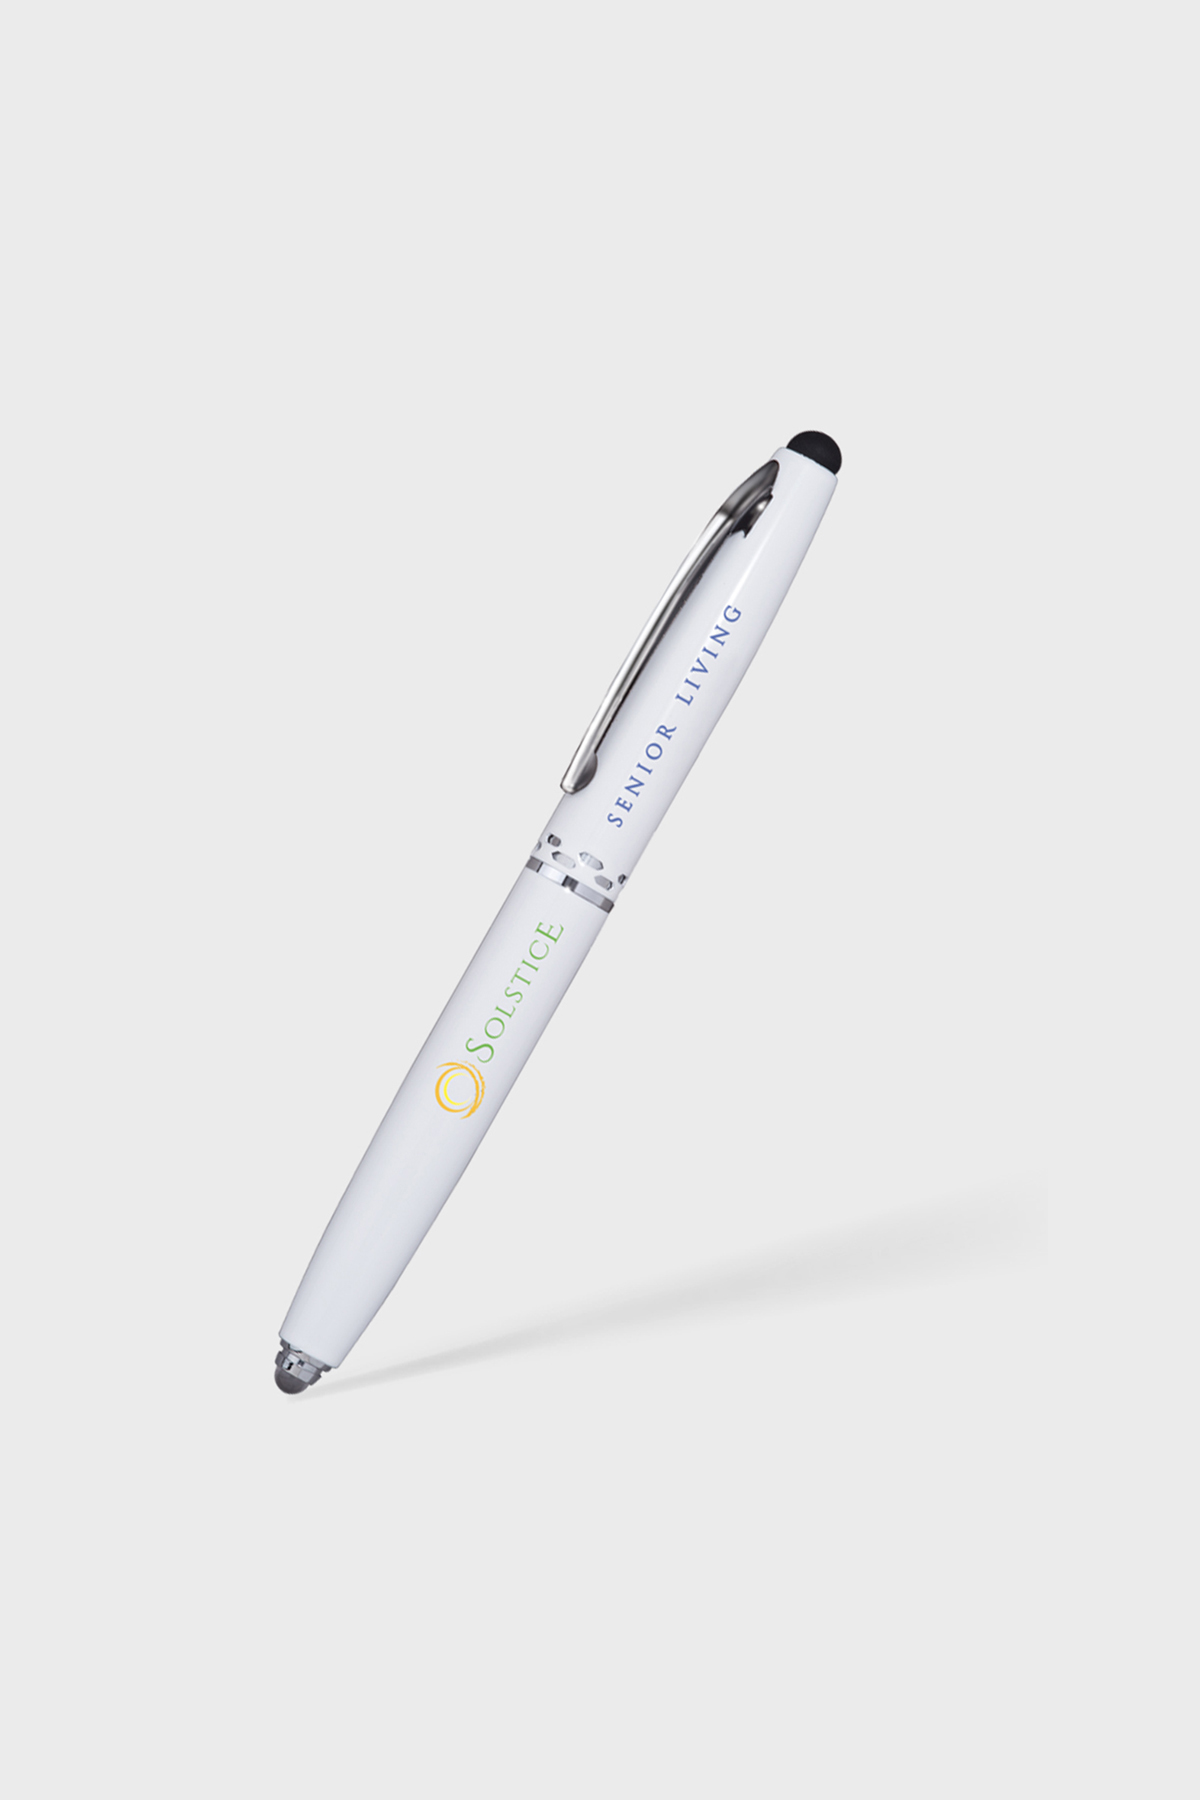 Funtastique Xeon 3D pen (white) rp800a WH